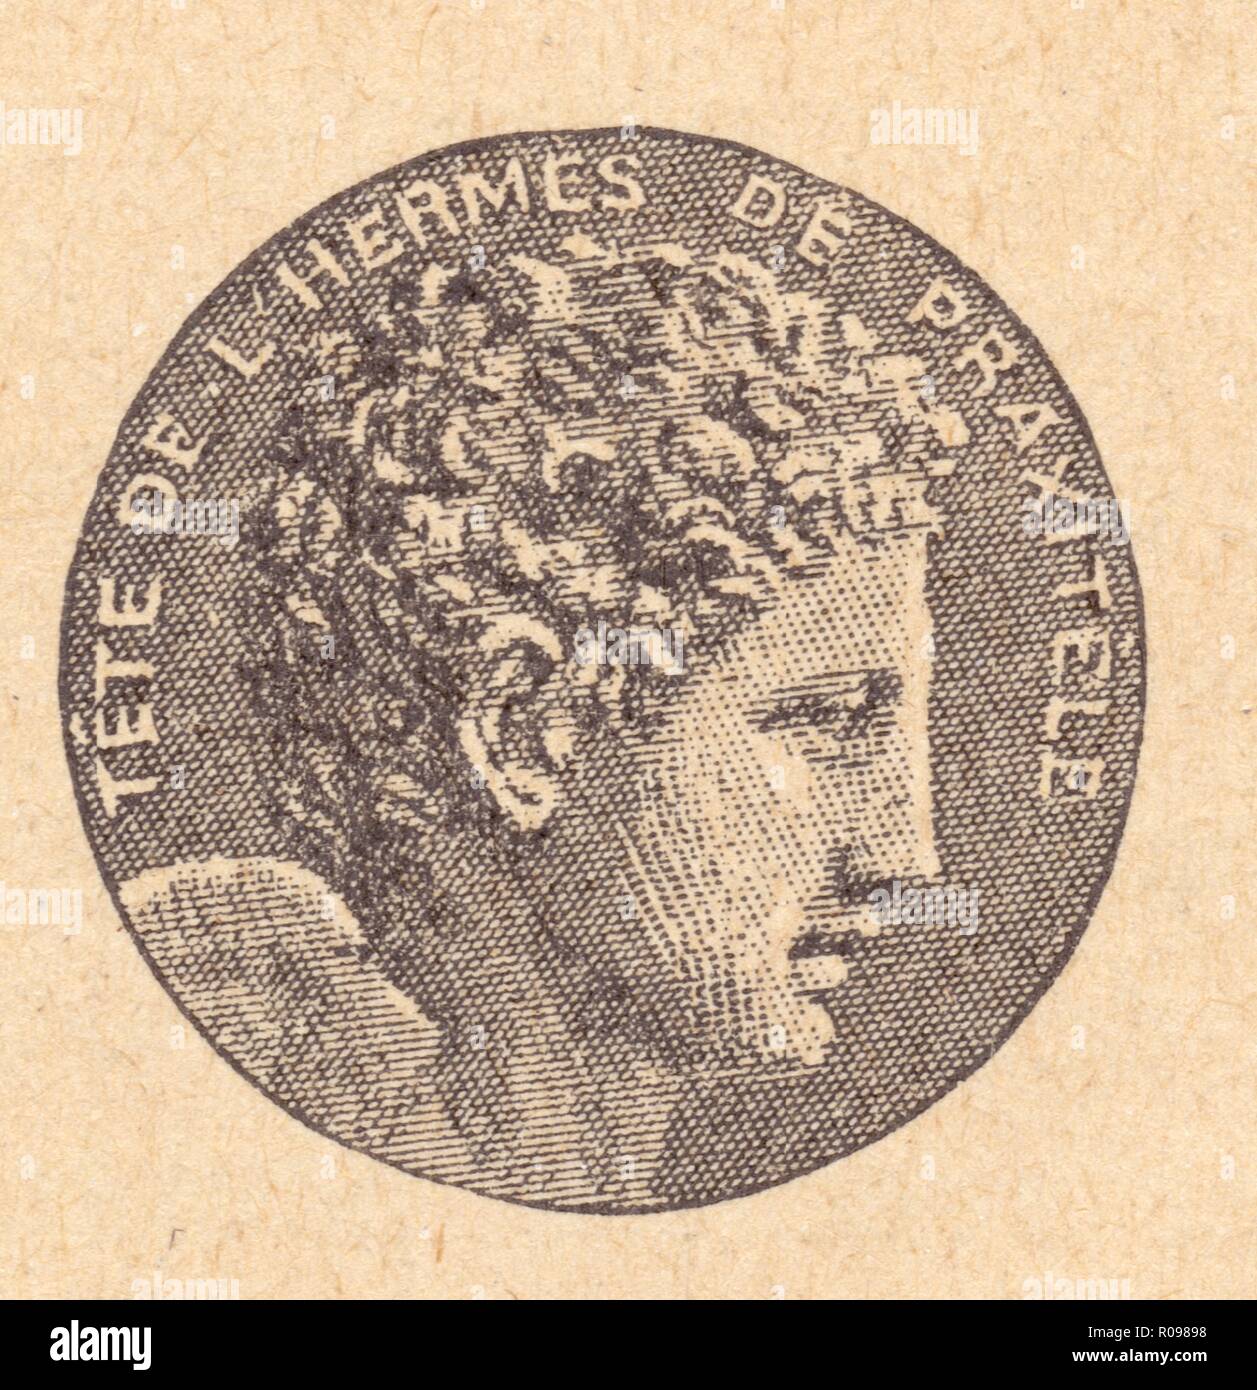 Typ de la beauté grecque. L’Hermès de Praxitèle, Bildhauer athénien, v. 350 Stockfoto